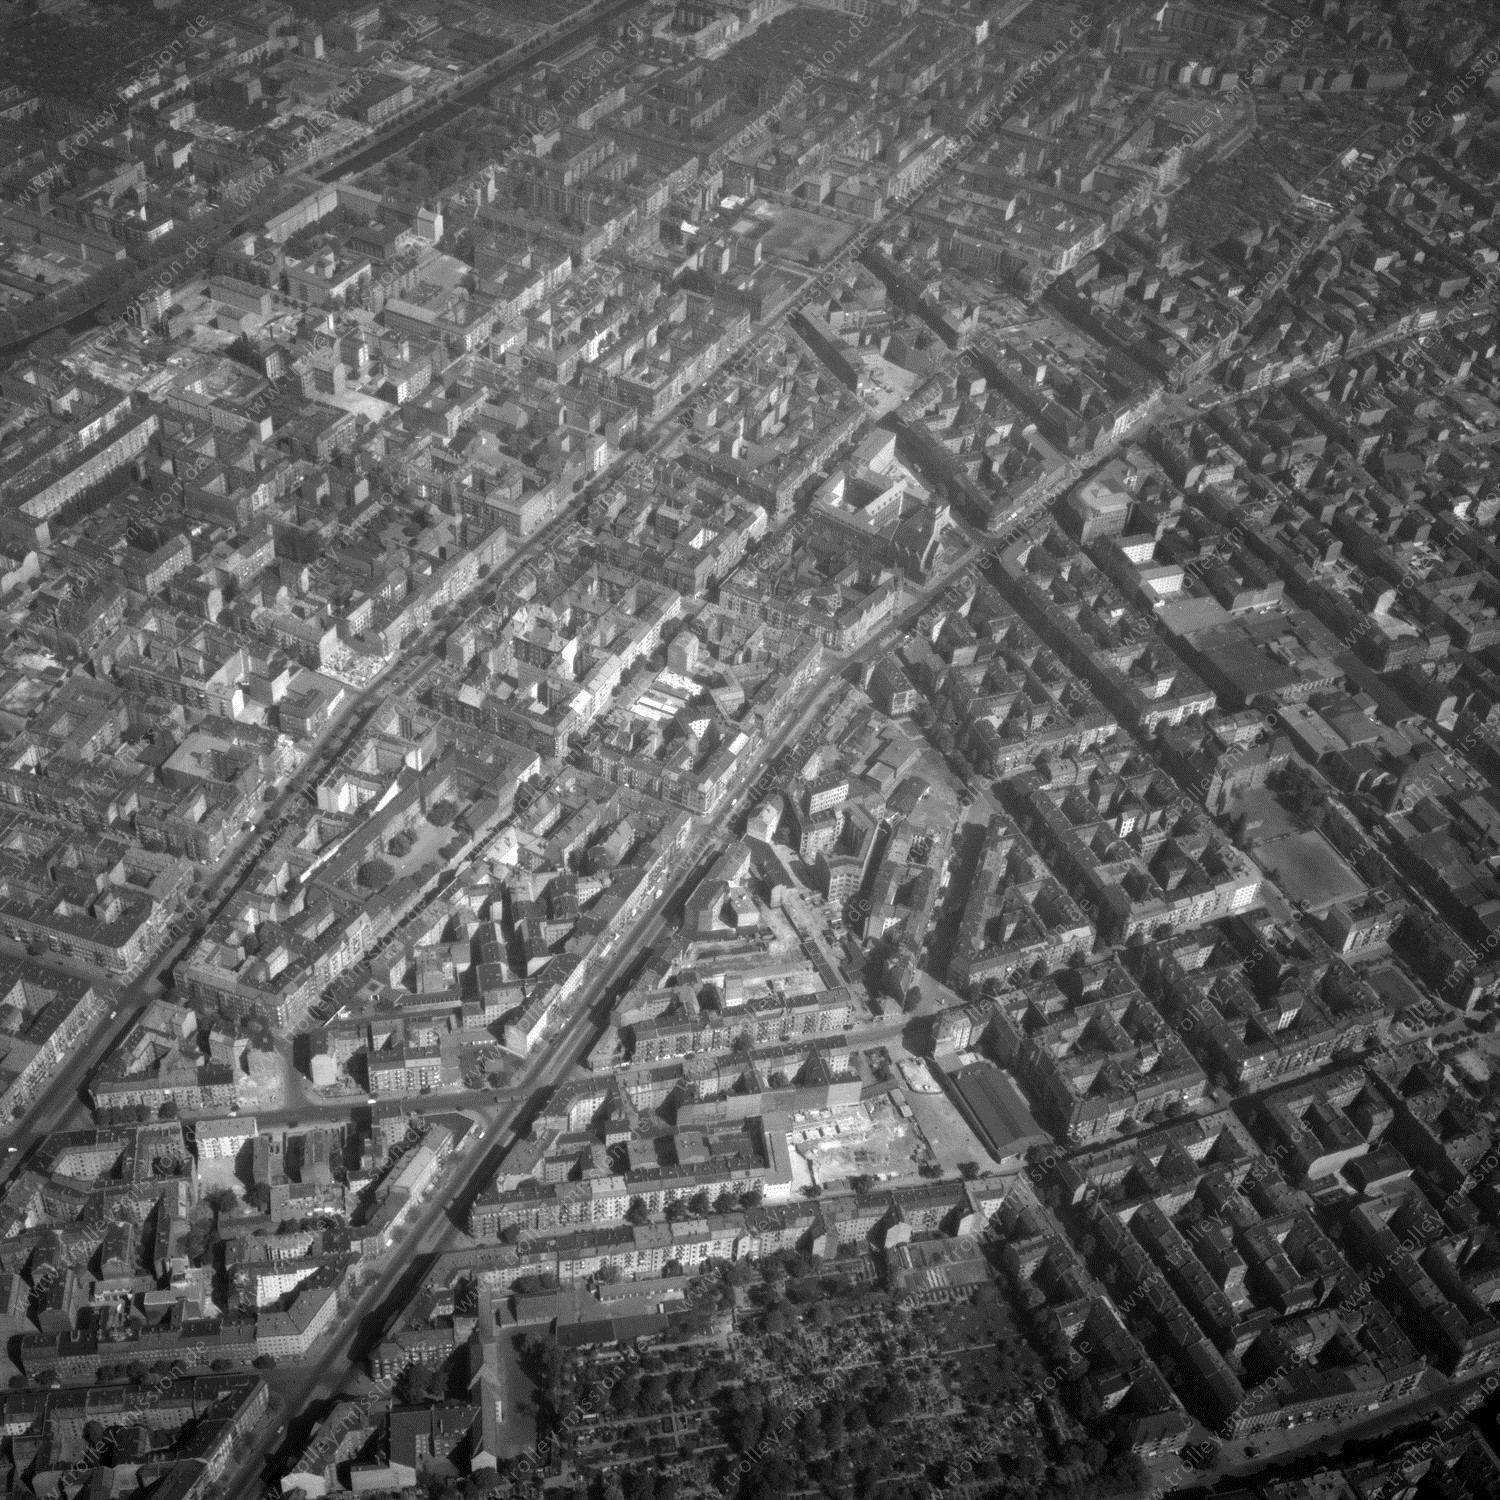 Alte Fotos und Luftbilder von Berlin - Luftbildaufnahme Nr. 01 - Historische Luftaufnahmen von West-Berlin aus dem Jahr 1954 - Flugstrecke Mike